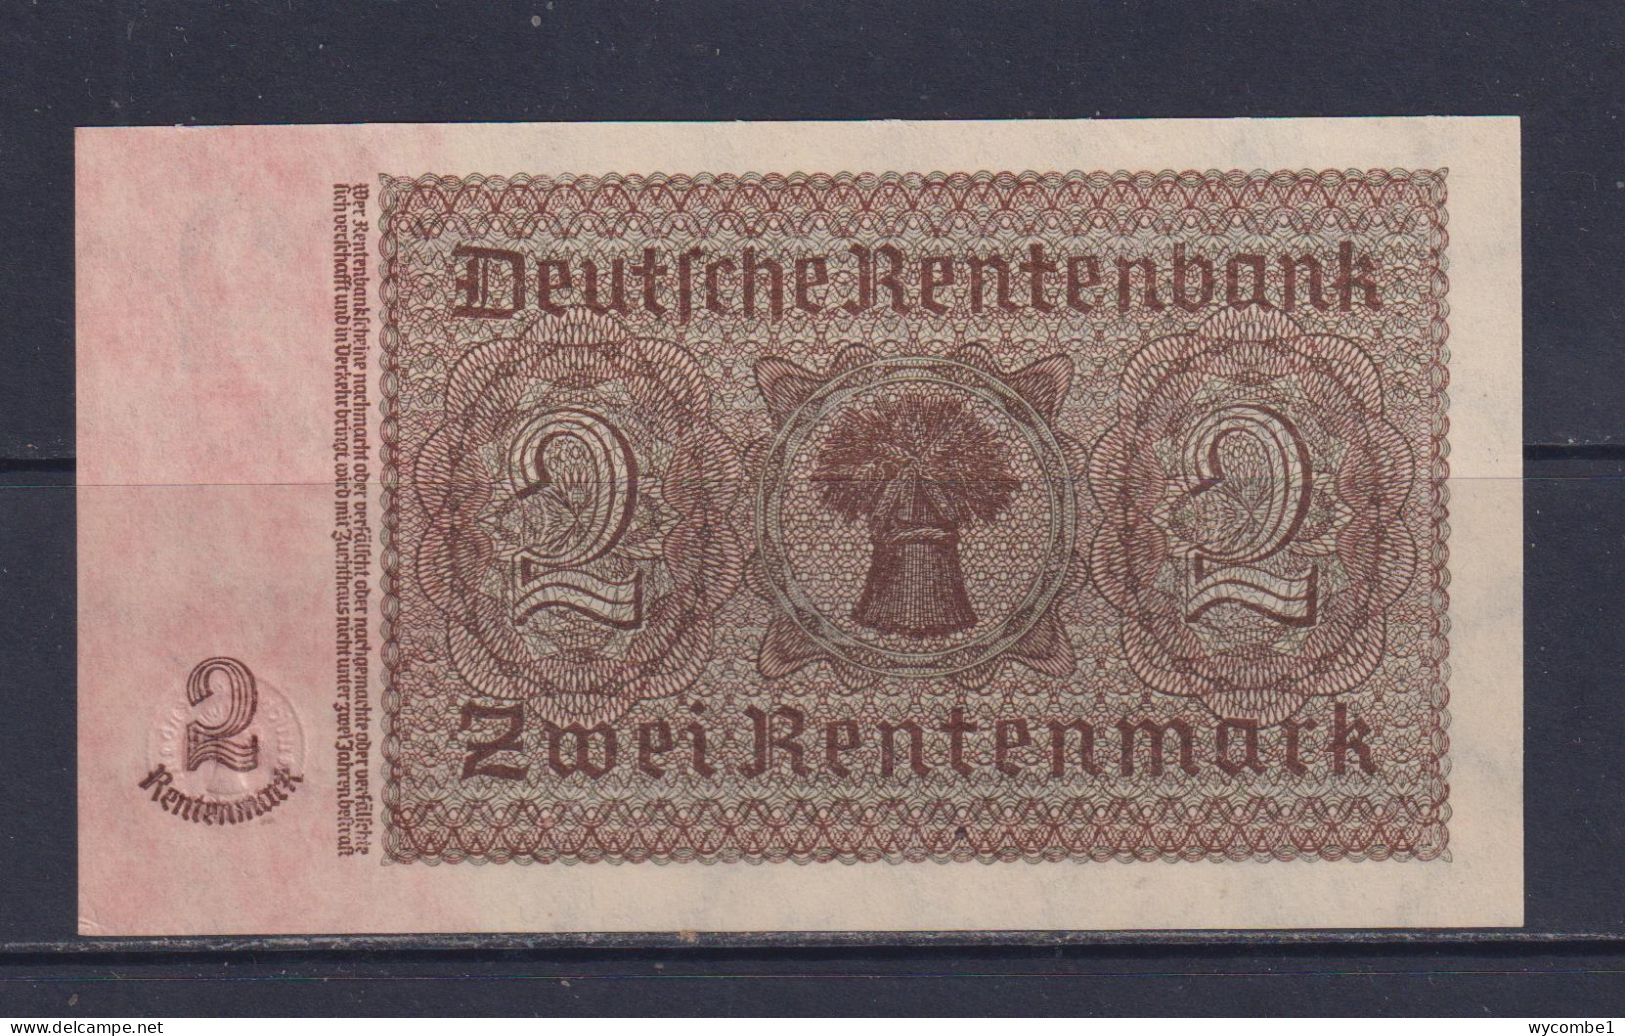 GERMANY - 1937  Rentenbankschein 2 Mark UNC/aUNC Banknote - 2 Rentenmark